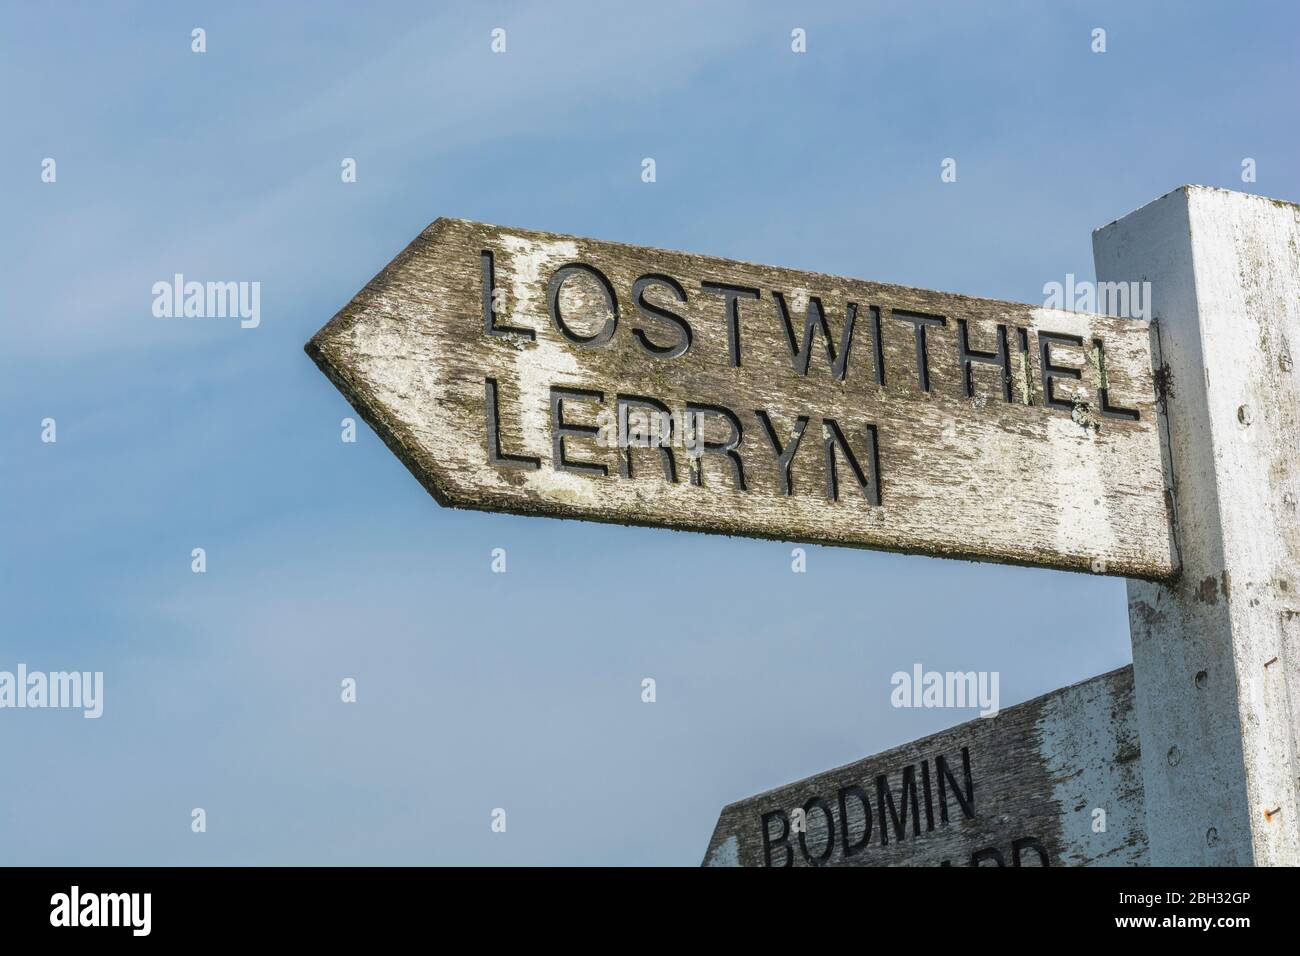 Locale rurale Cornish Road segno per Lostwithiel e Lerryn - situato contro il cielo blu soleggiato Springtime. Foto Stock